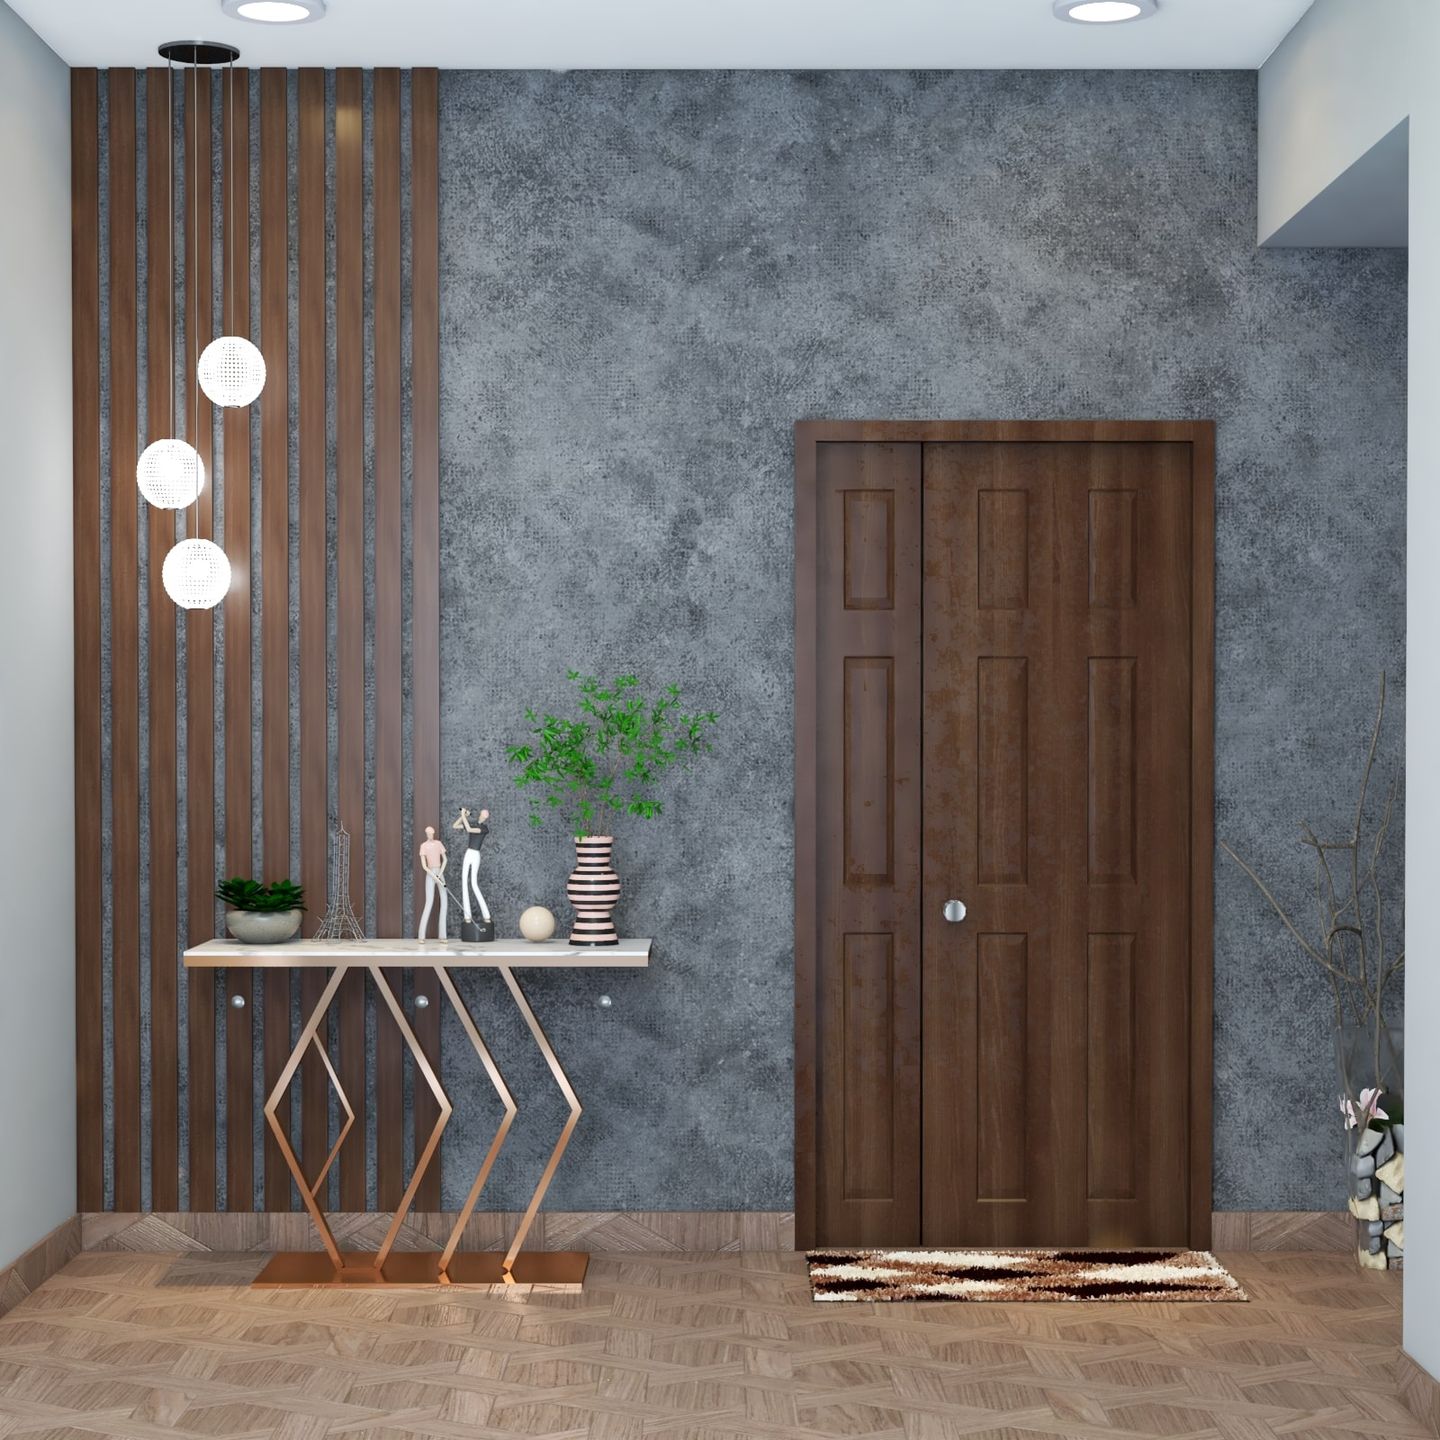 White Stone Foyer Design - Livspace